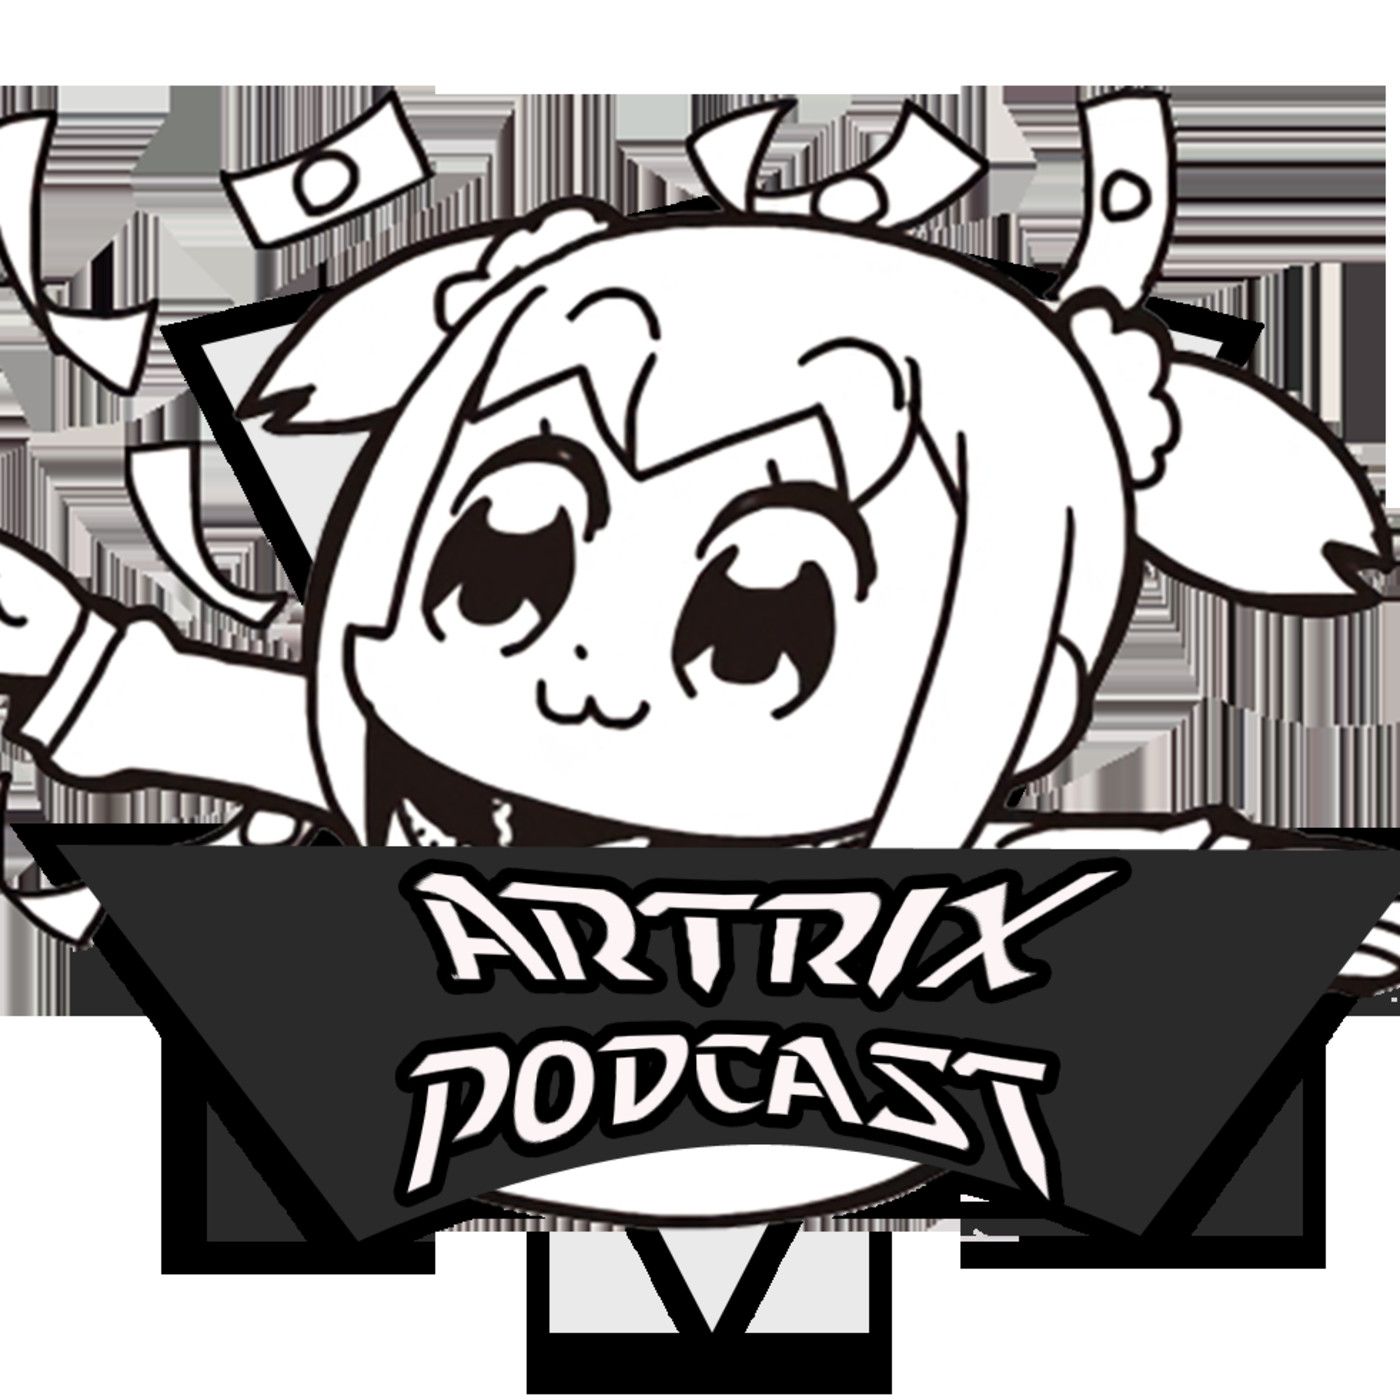 Artrix Podcast: Todas odiamos a VELMA